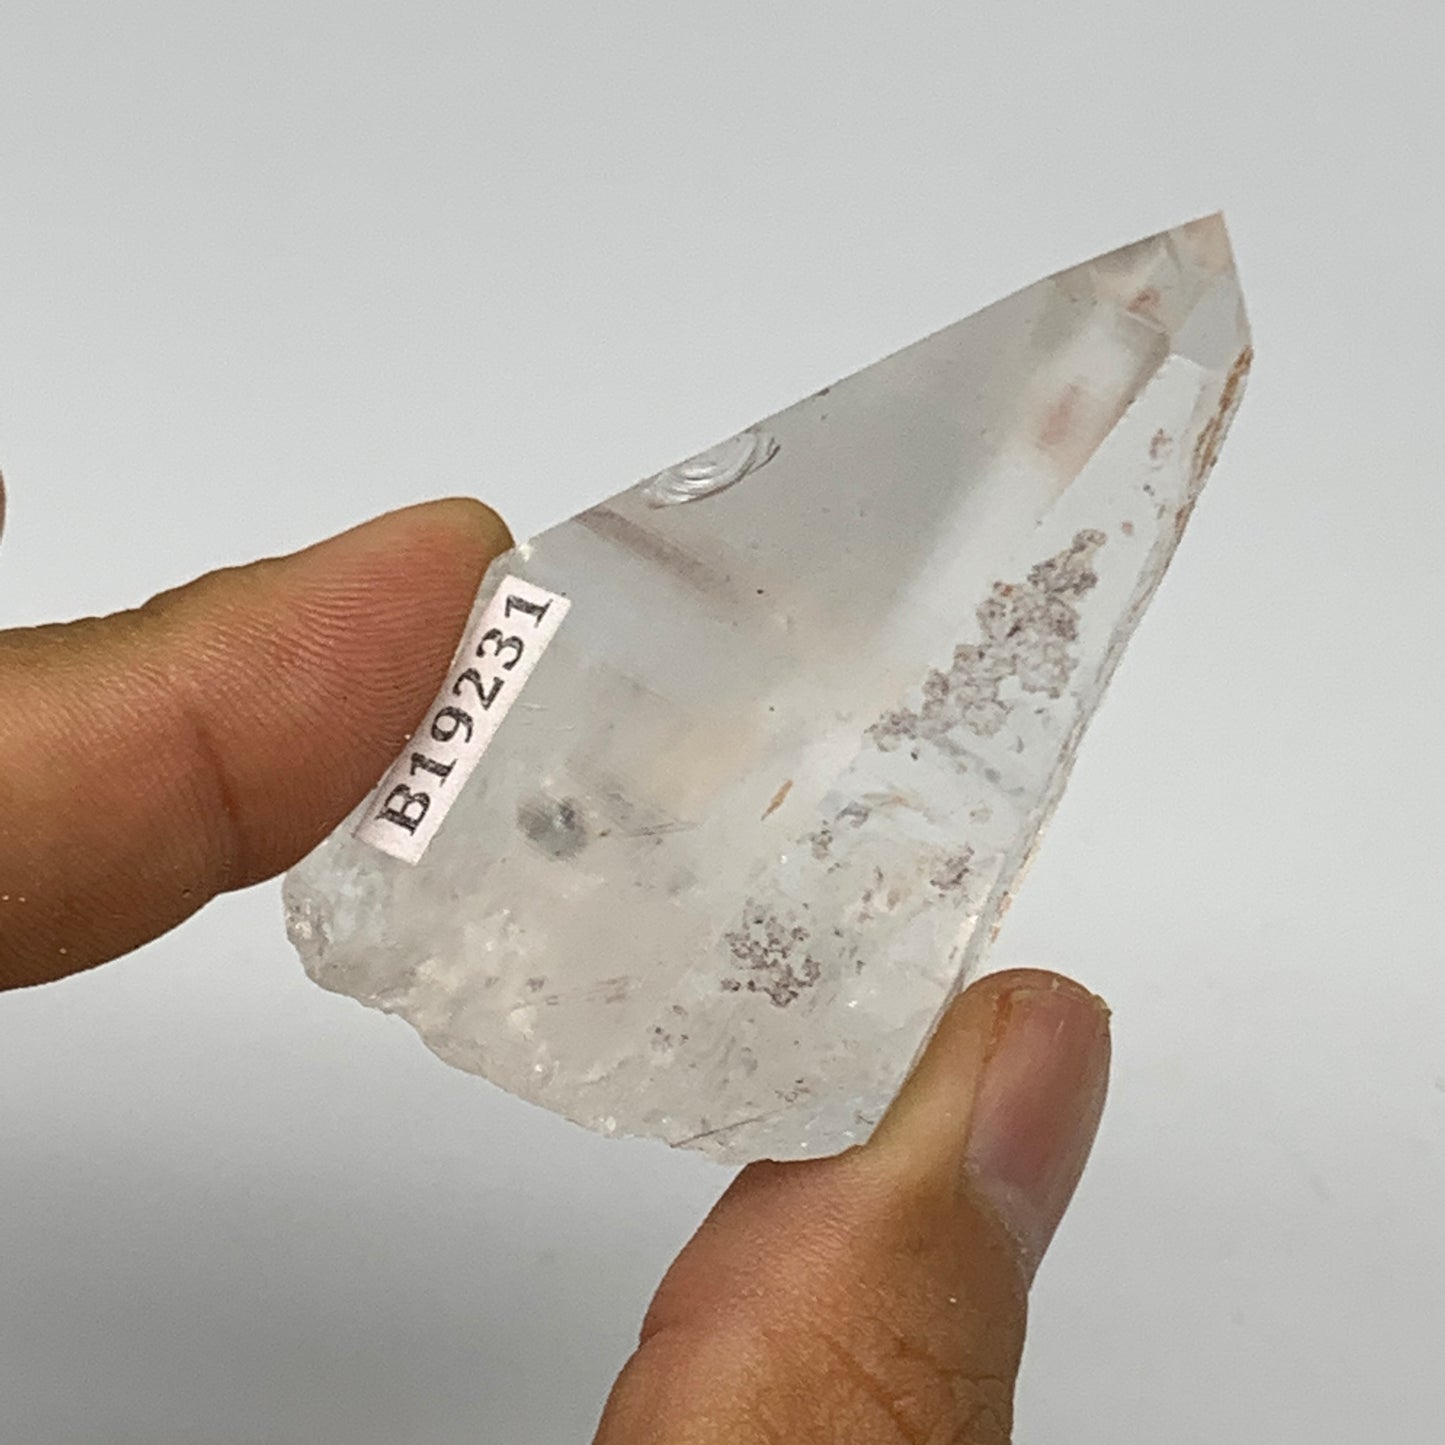 63.2g, 2.2"x1.3"x1.2", Lemurian Quartz Crystal Mineral Specimens @Brazil, B19231